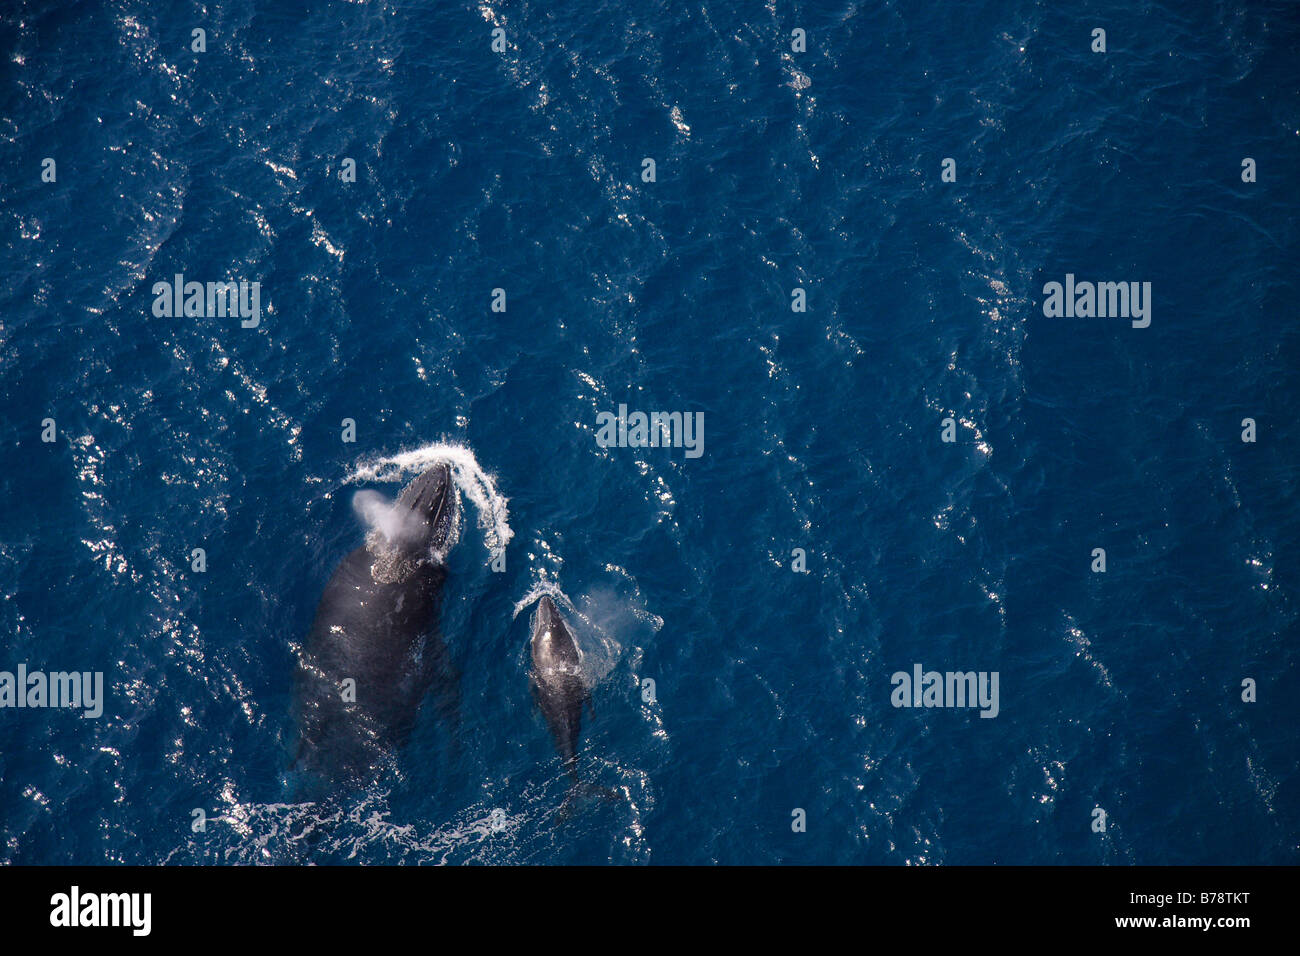 Vue aérienne d'une baleine à bosse soutenu et surfaçage de veau Banque D'Images